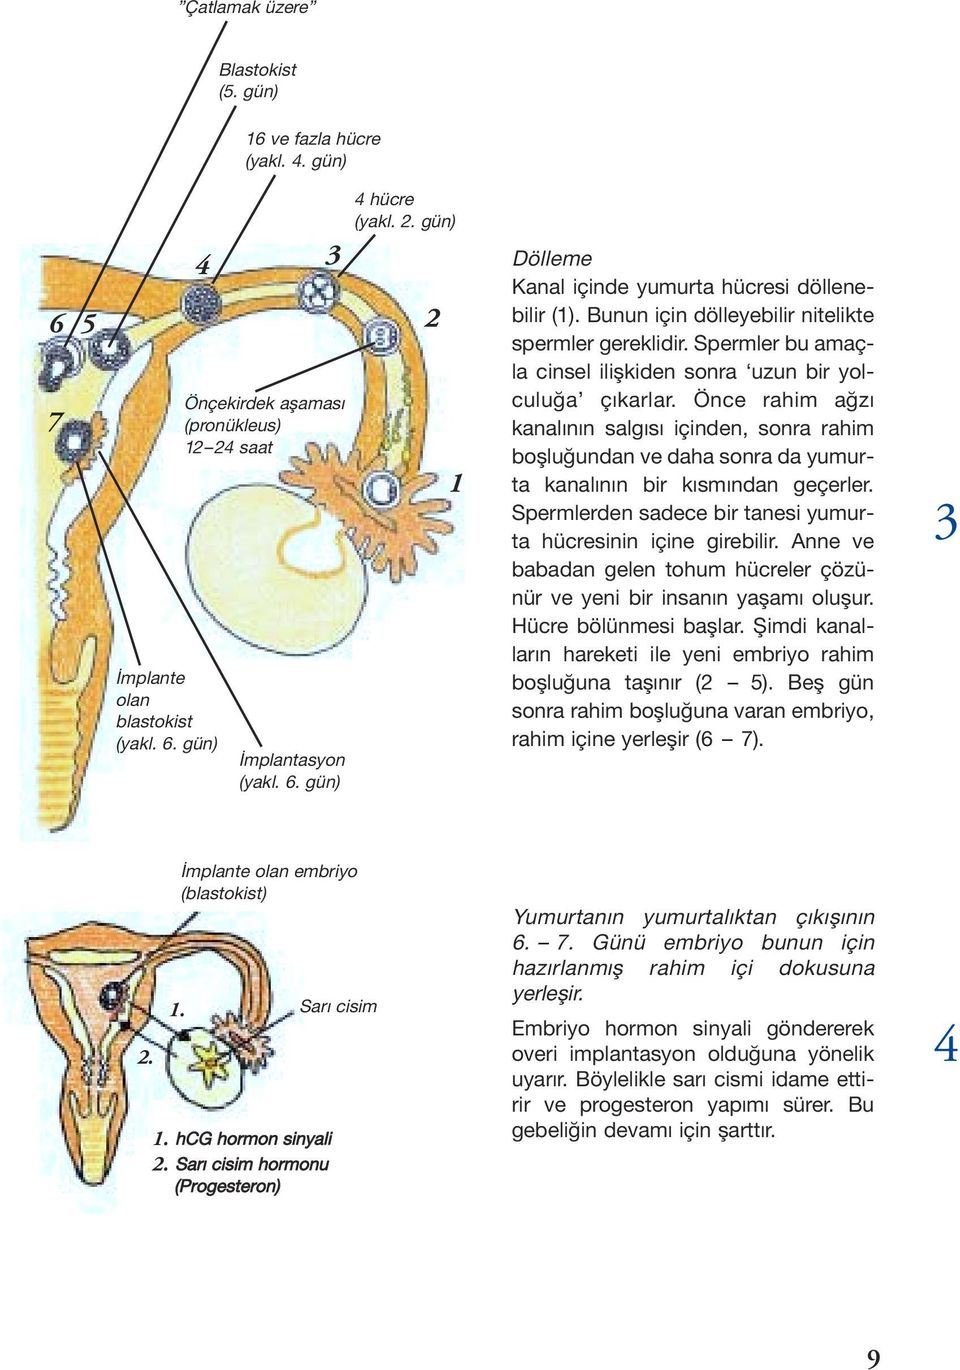 Önce rahim a z kanal n n salg s içinden, sonra rahim bo lu undan ve daha sonra da yumurta kanal n n bir k sm ndan geçerler. Spermlerden sadece bir tanesi yumurta hücresinin içine girebilir.